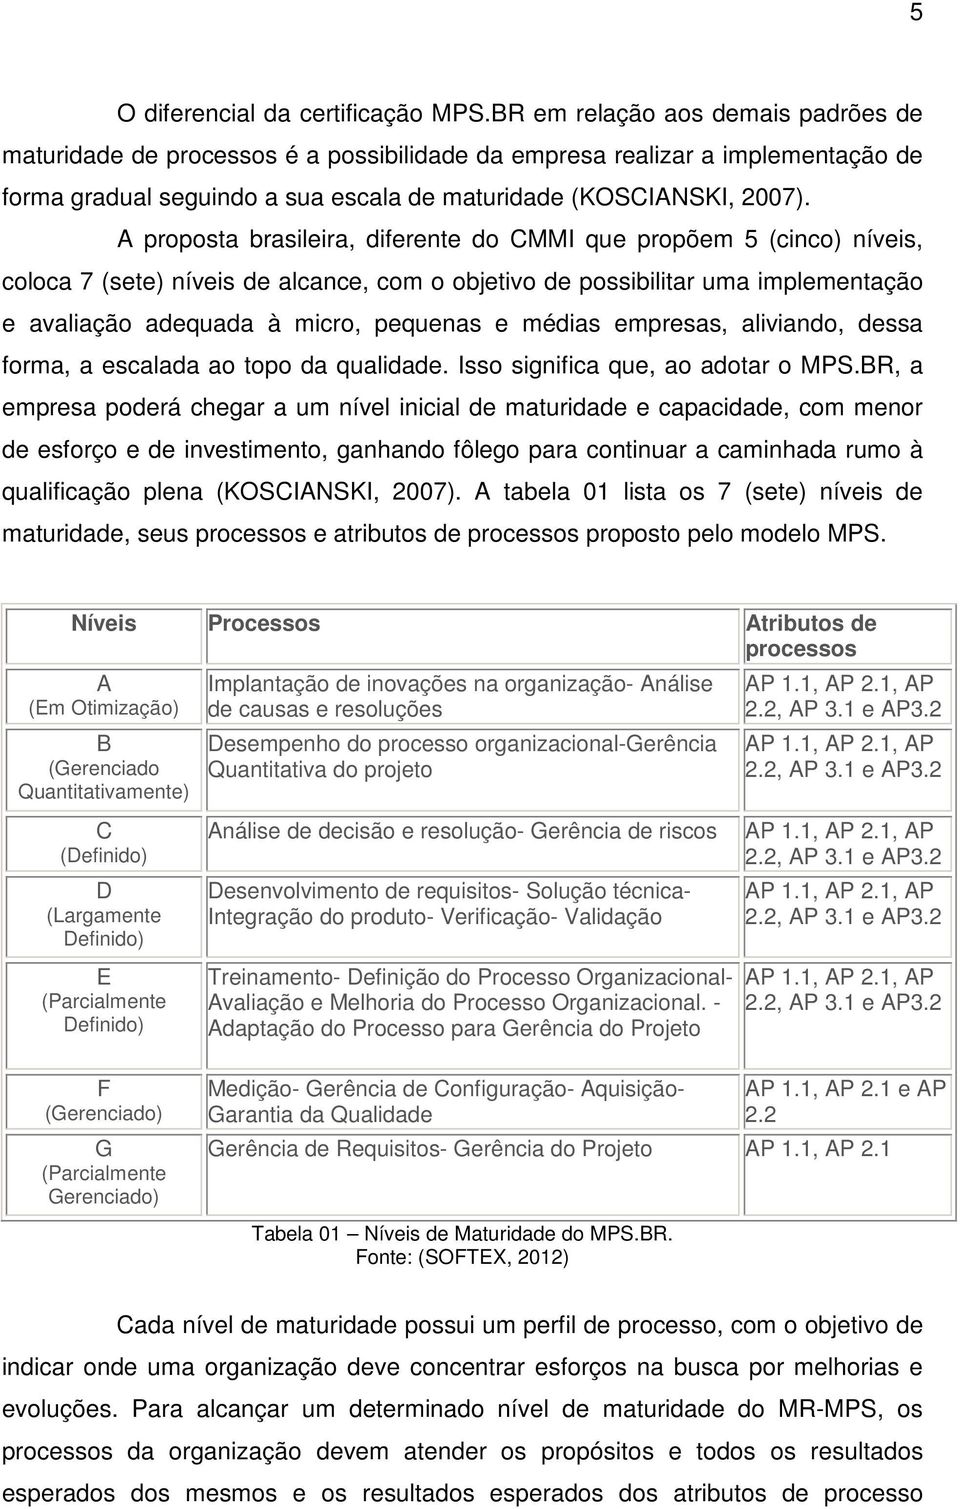 A proposta brasileira, diferente do CMMI que propõem 5 (cinco) níveis, coloca 7 (sete) níveis de alcance, com o objetivo de possibilitar uma implementação e avaliação adequada à micro, pequenas e